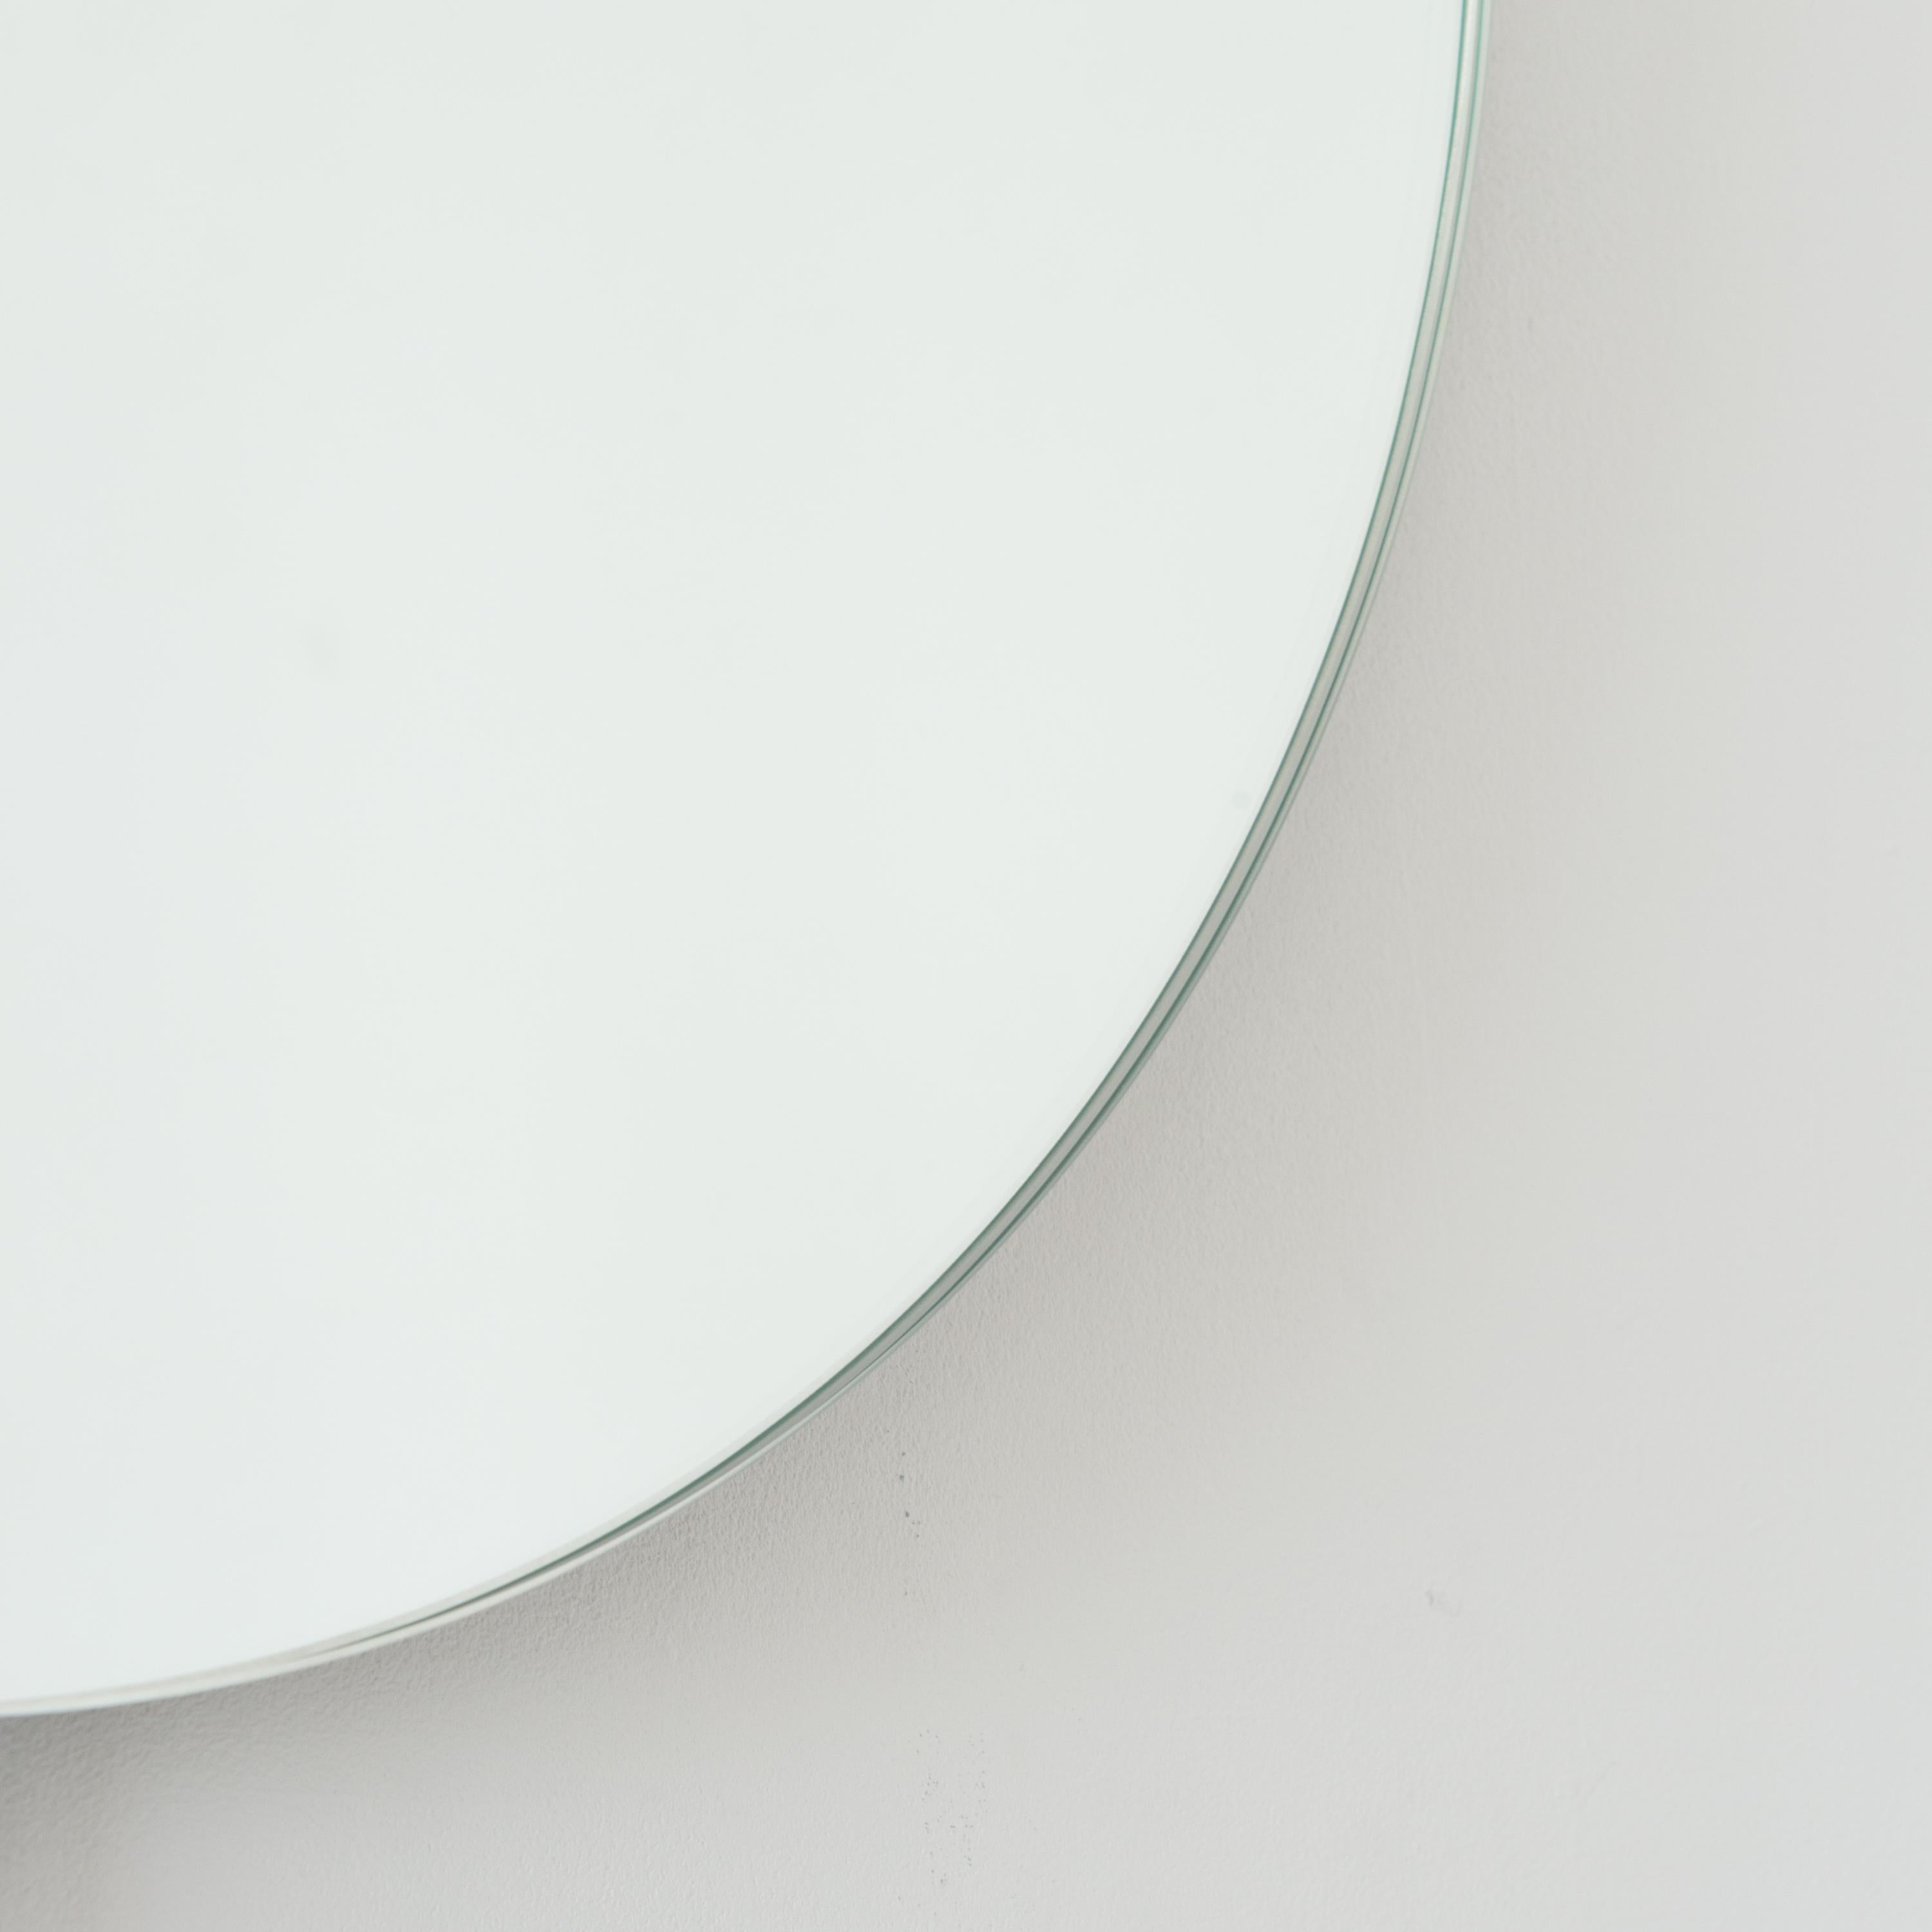 Miroir rond contemporain rétro-éclairé sans cadre avec un effet flottant. Un design de qualité qui garantit que le miroir est parfaitement parallèle au mur. Conçu et fabriqué à Londres, au Royaume-Uni.

Equipé de plaques professionnelles non